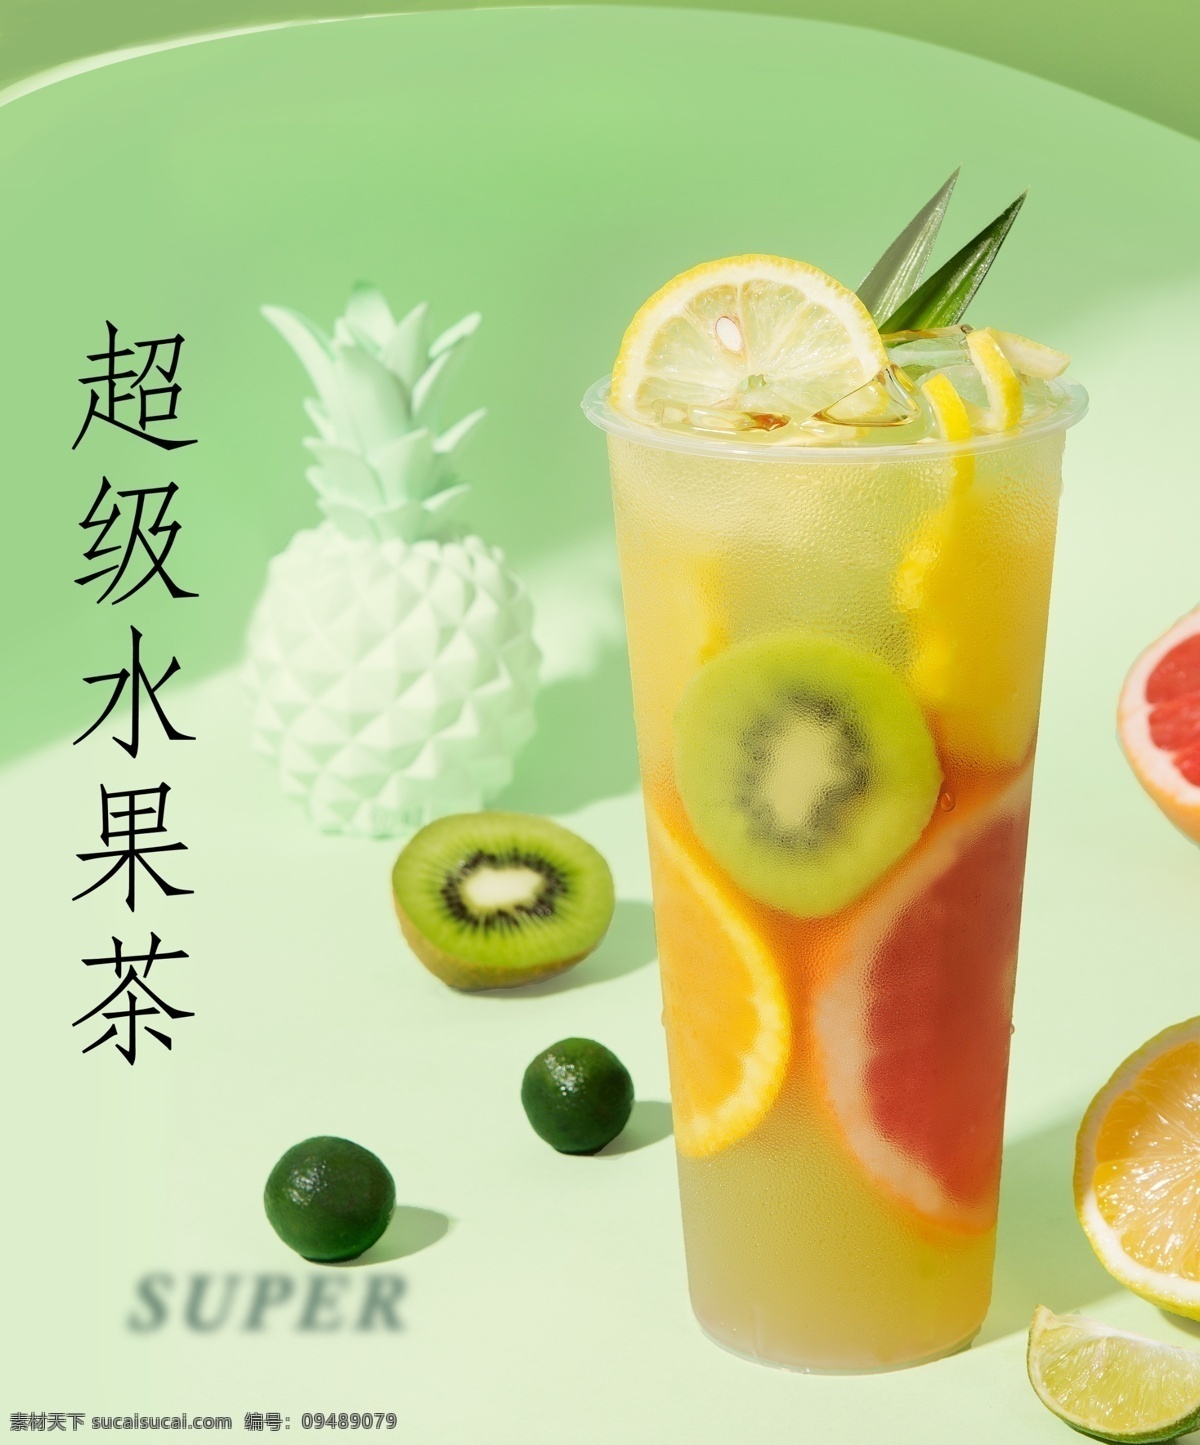 水果茶 饮料 猕猴桃 橙子 柠檬 简约风 奶茶 绿色背景海报